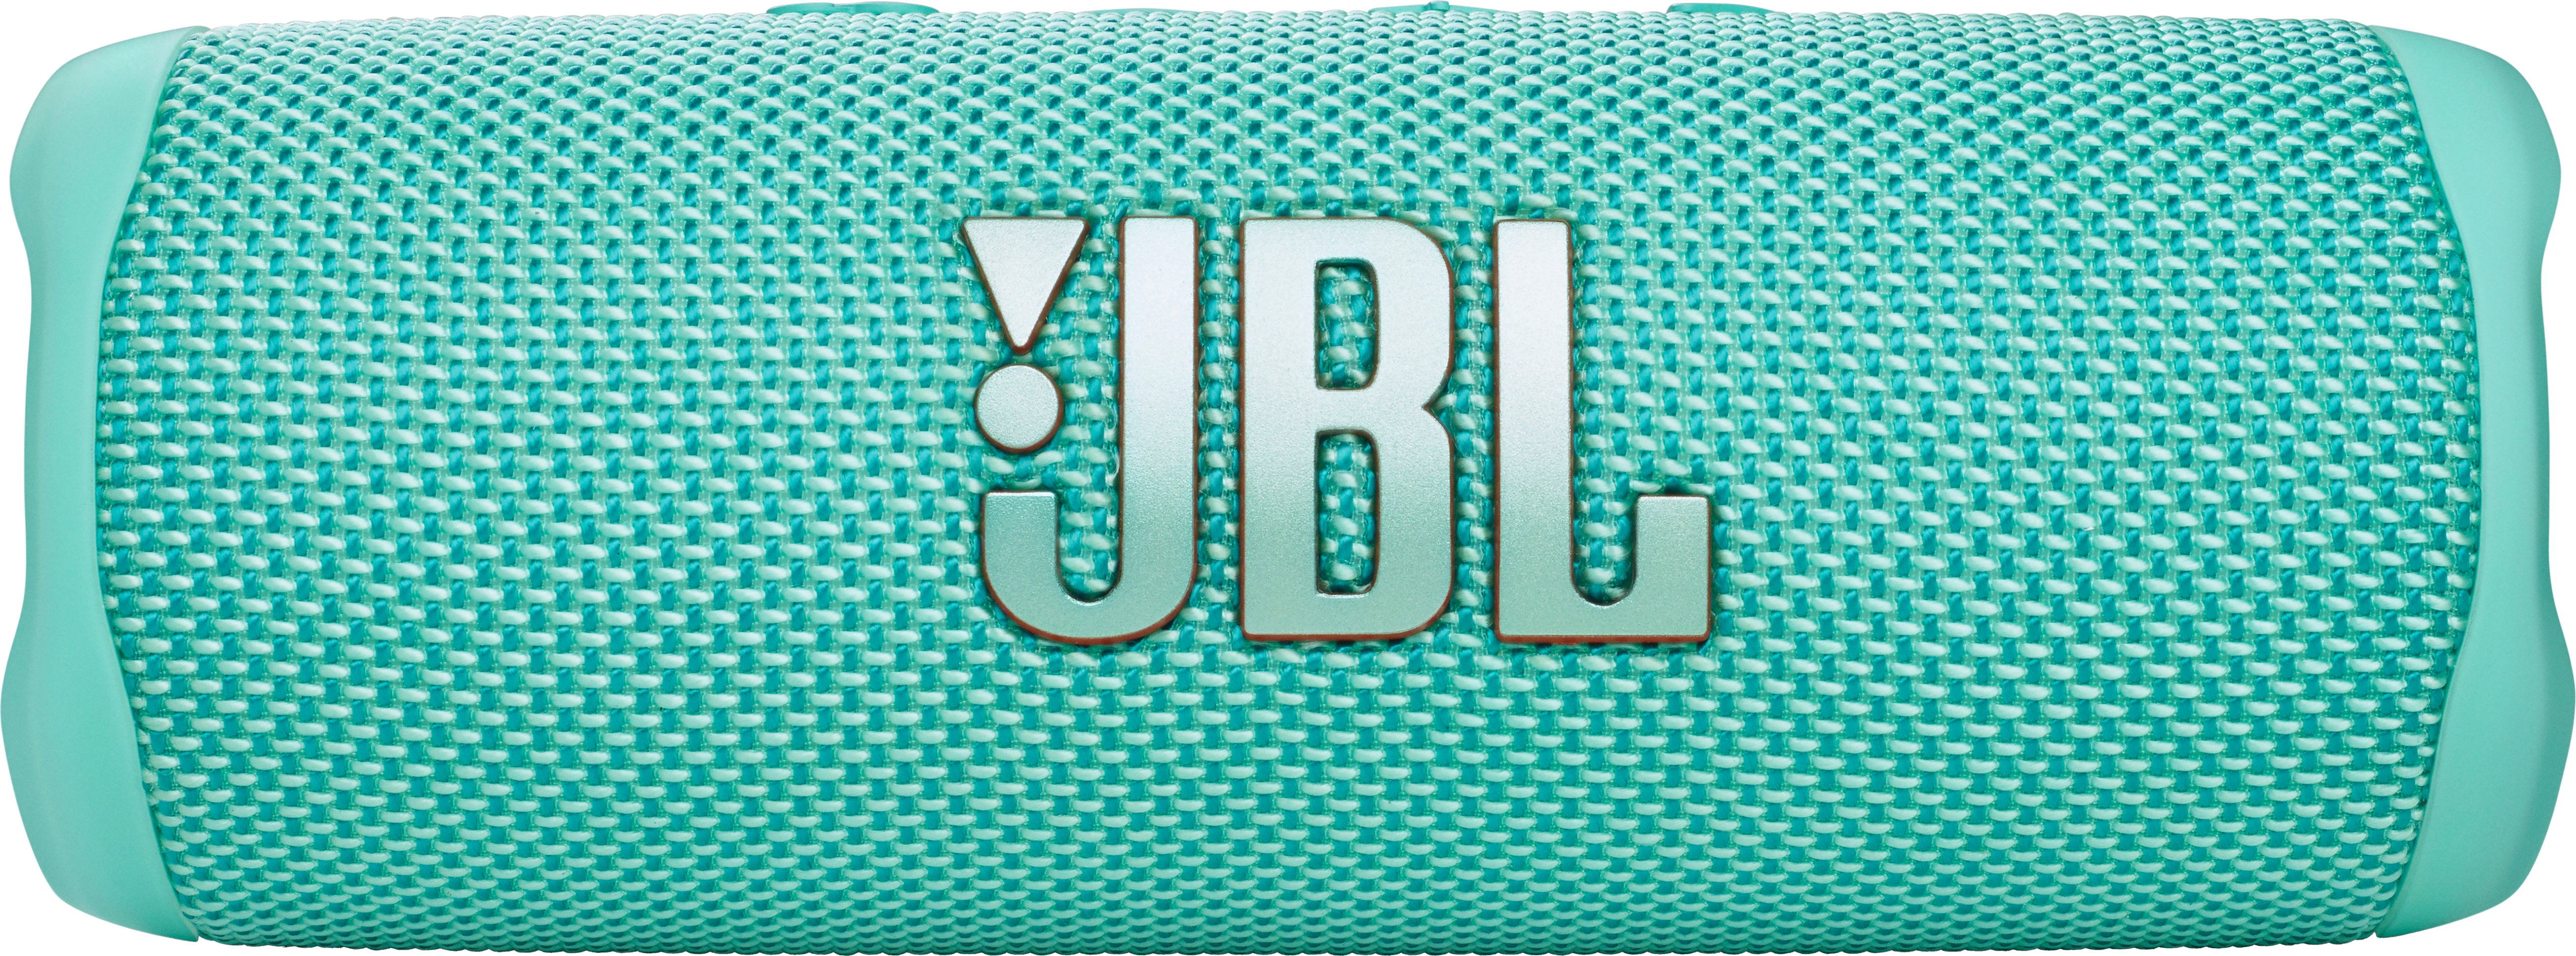 Portable FLIP6 Teal Waterproof Best JBLFLIP6TEALAM JBL Speaker Buy -